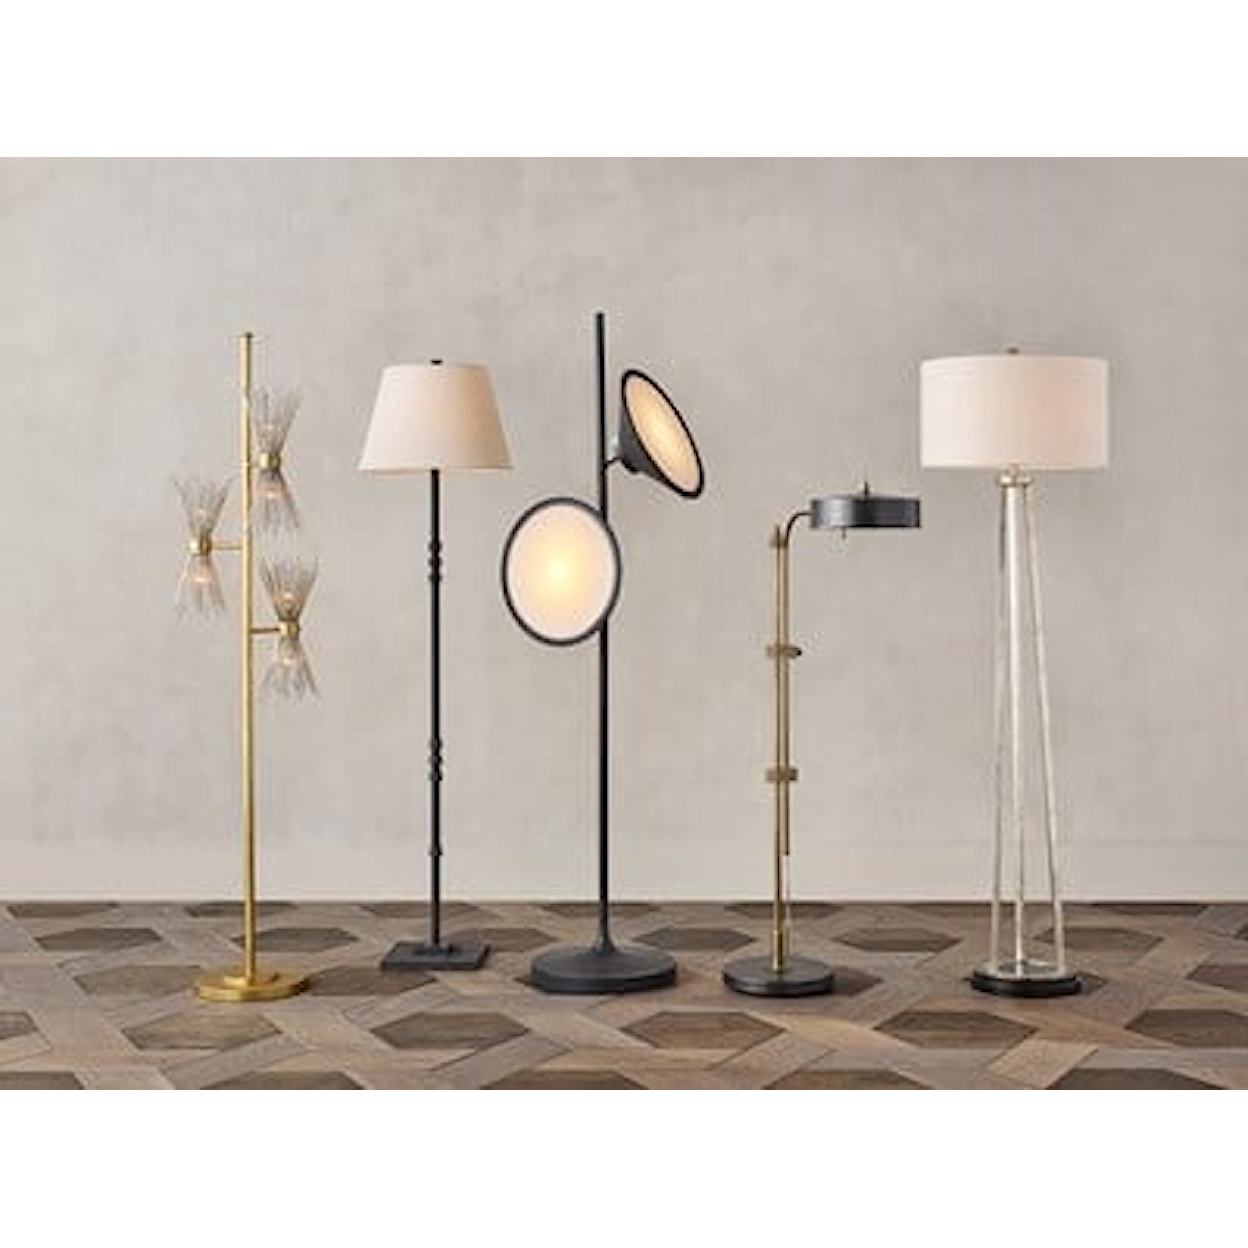 Currey & Co Lighting- Floor Lamps Bulat Black Floor Lamp